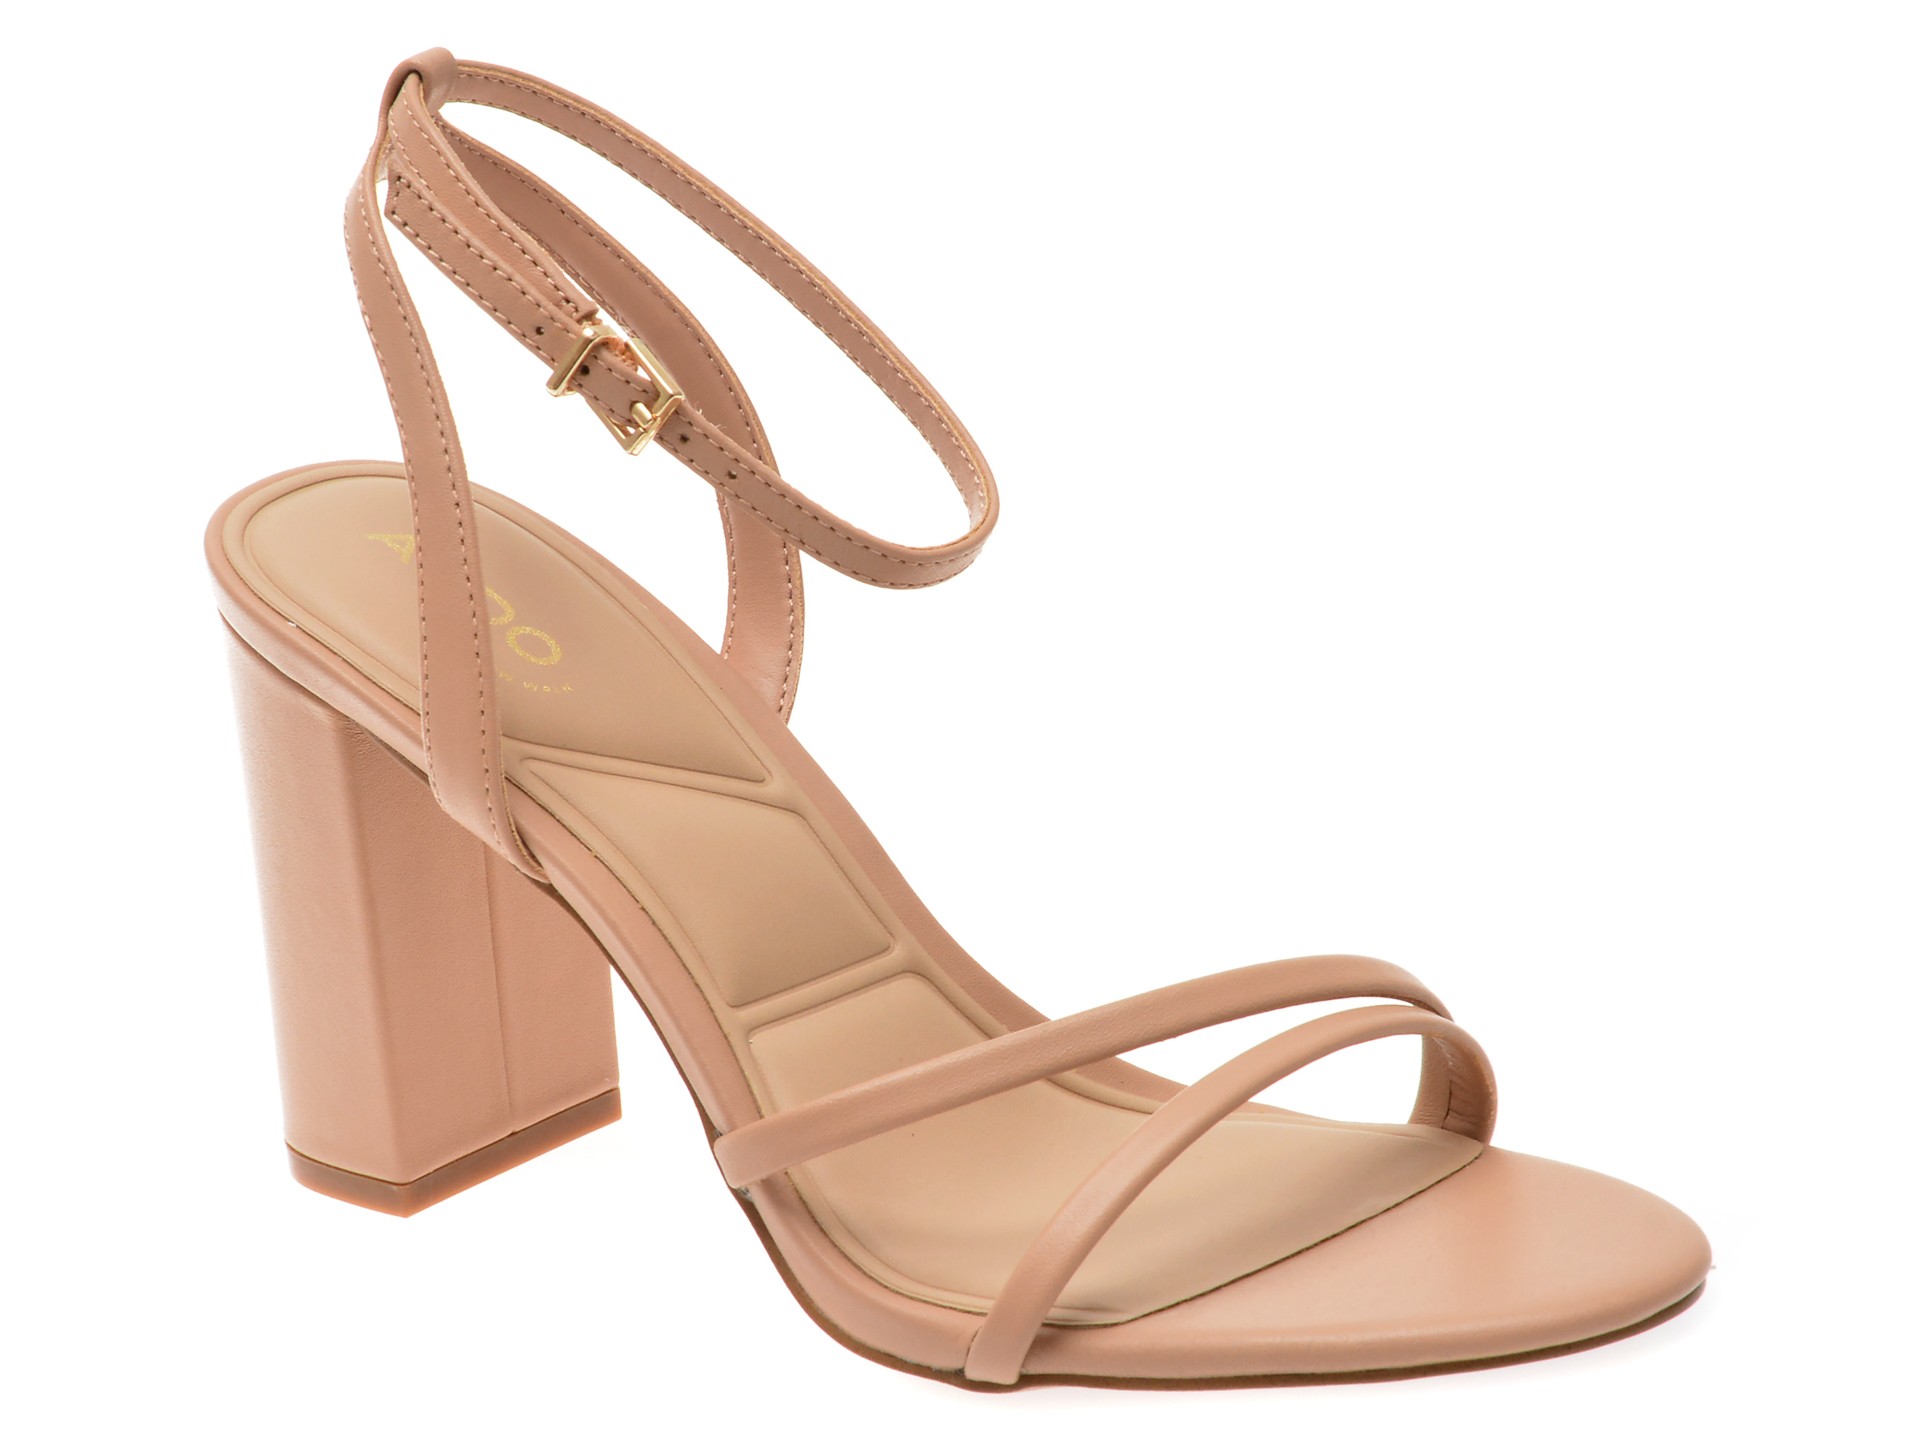 Sandale elegante ALDO nude, 13747176, din piele naturala